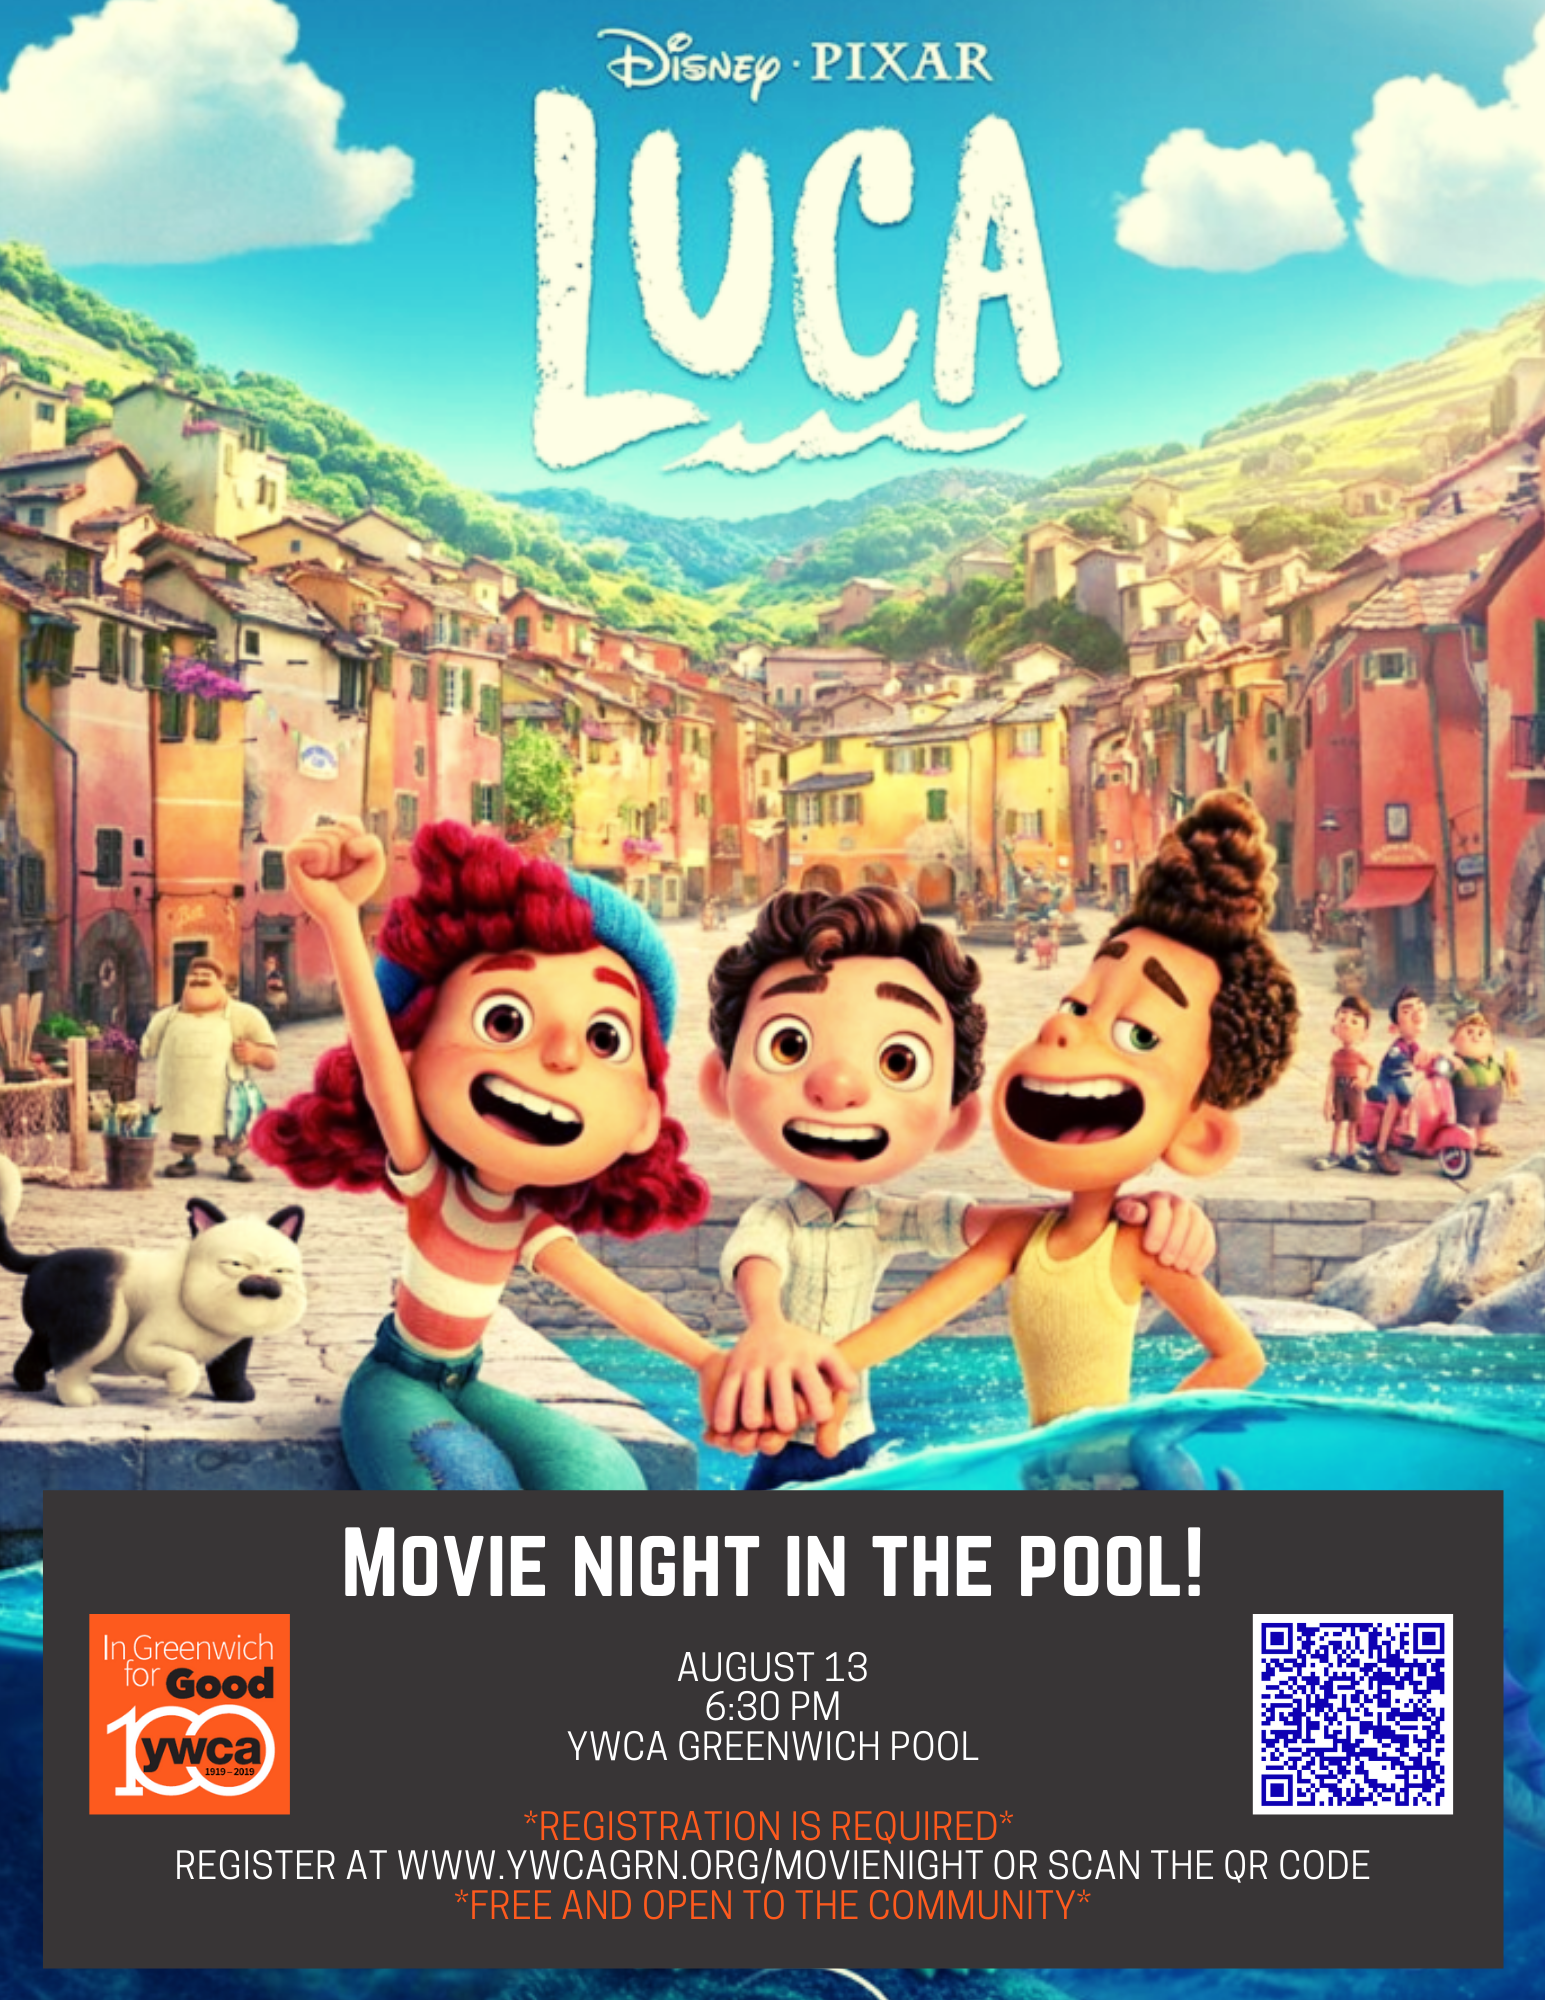 Pool movie night